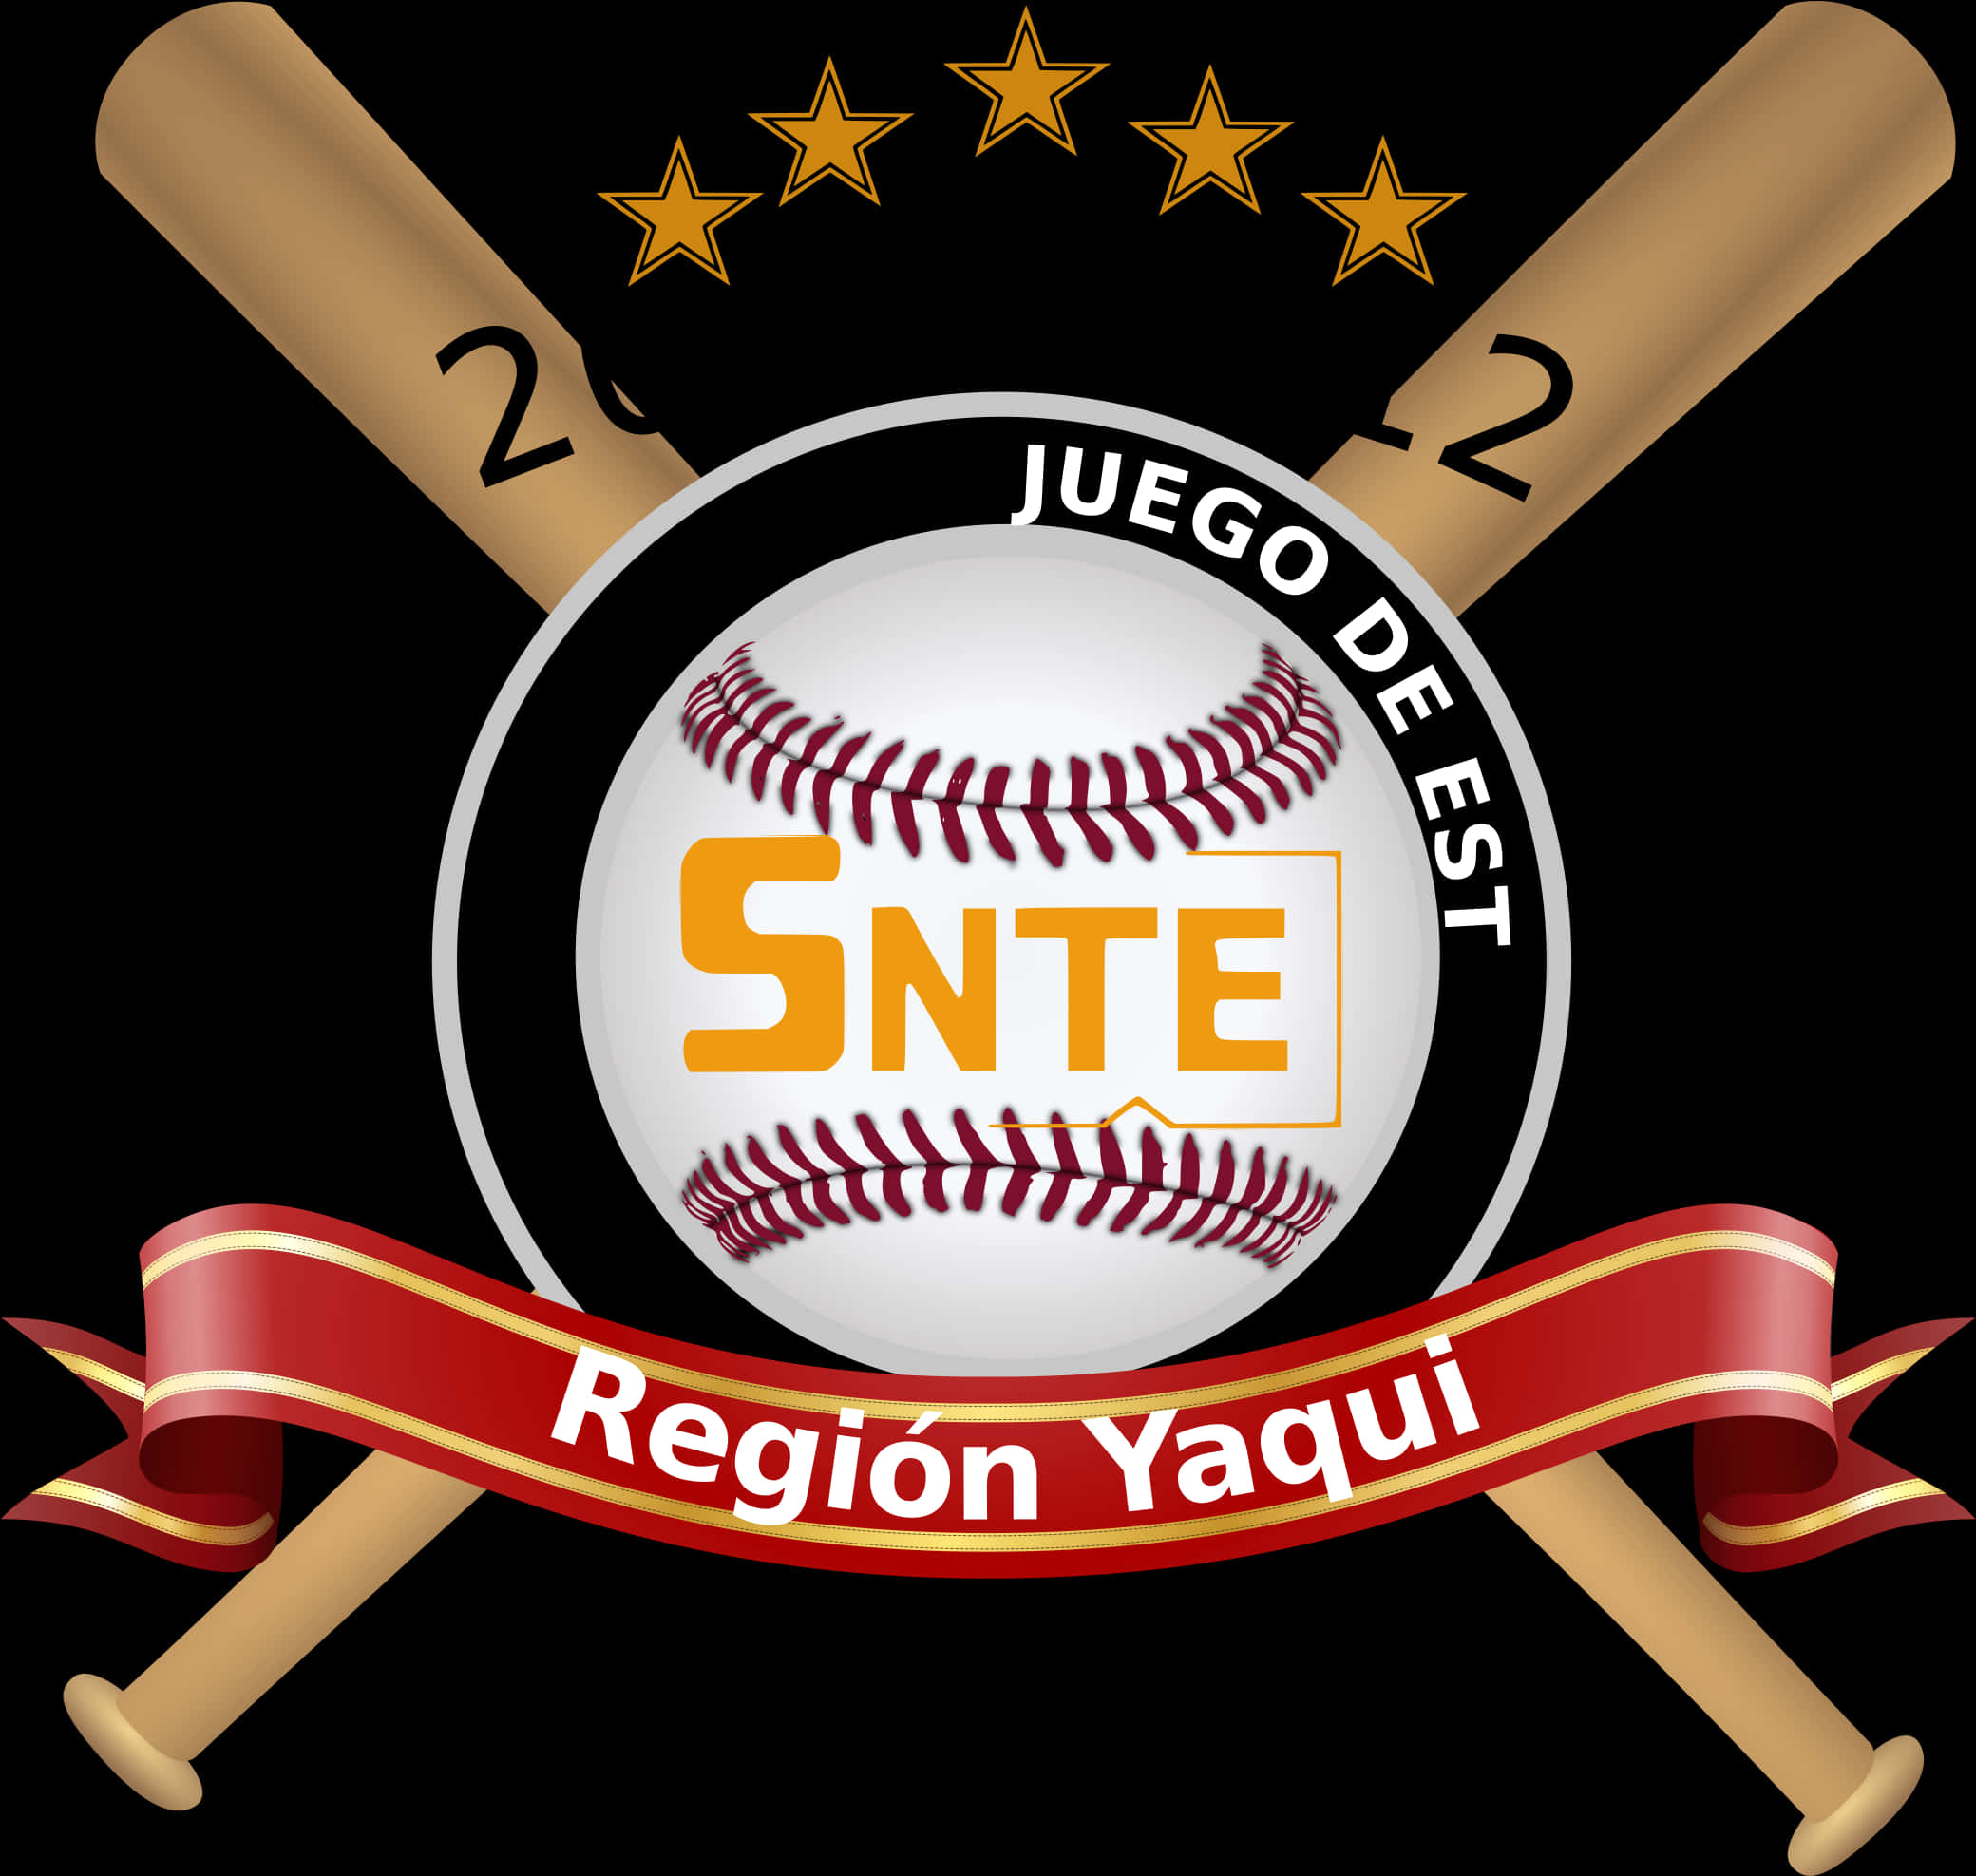 Baseball Emblem S N T E Region Yaqui PNG